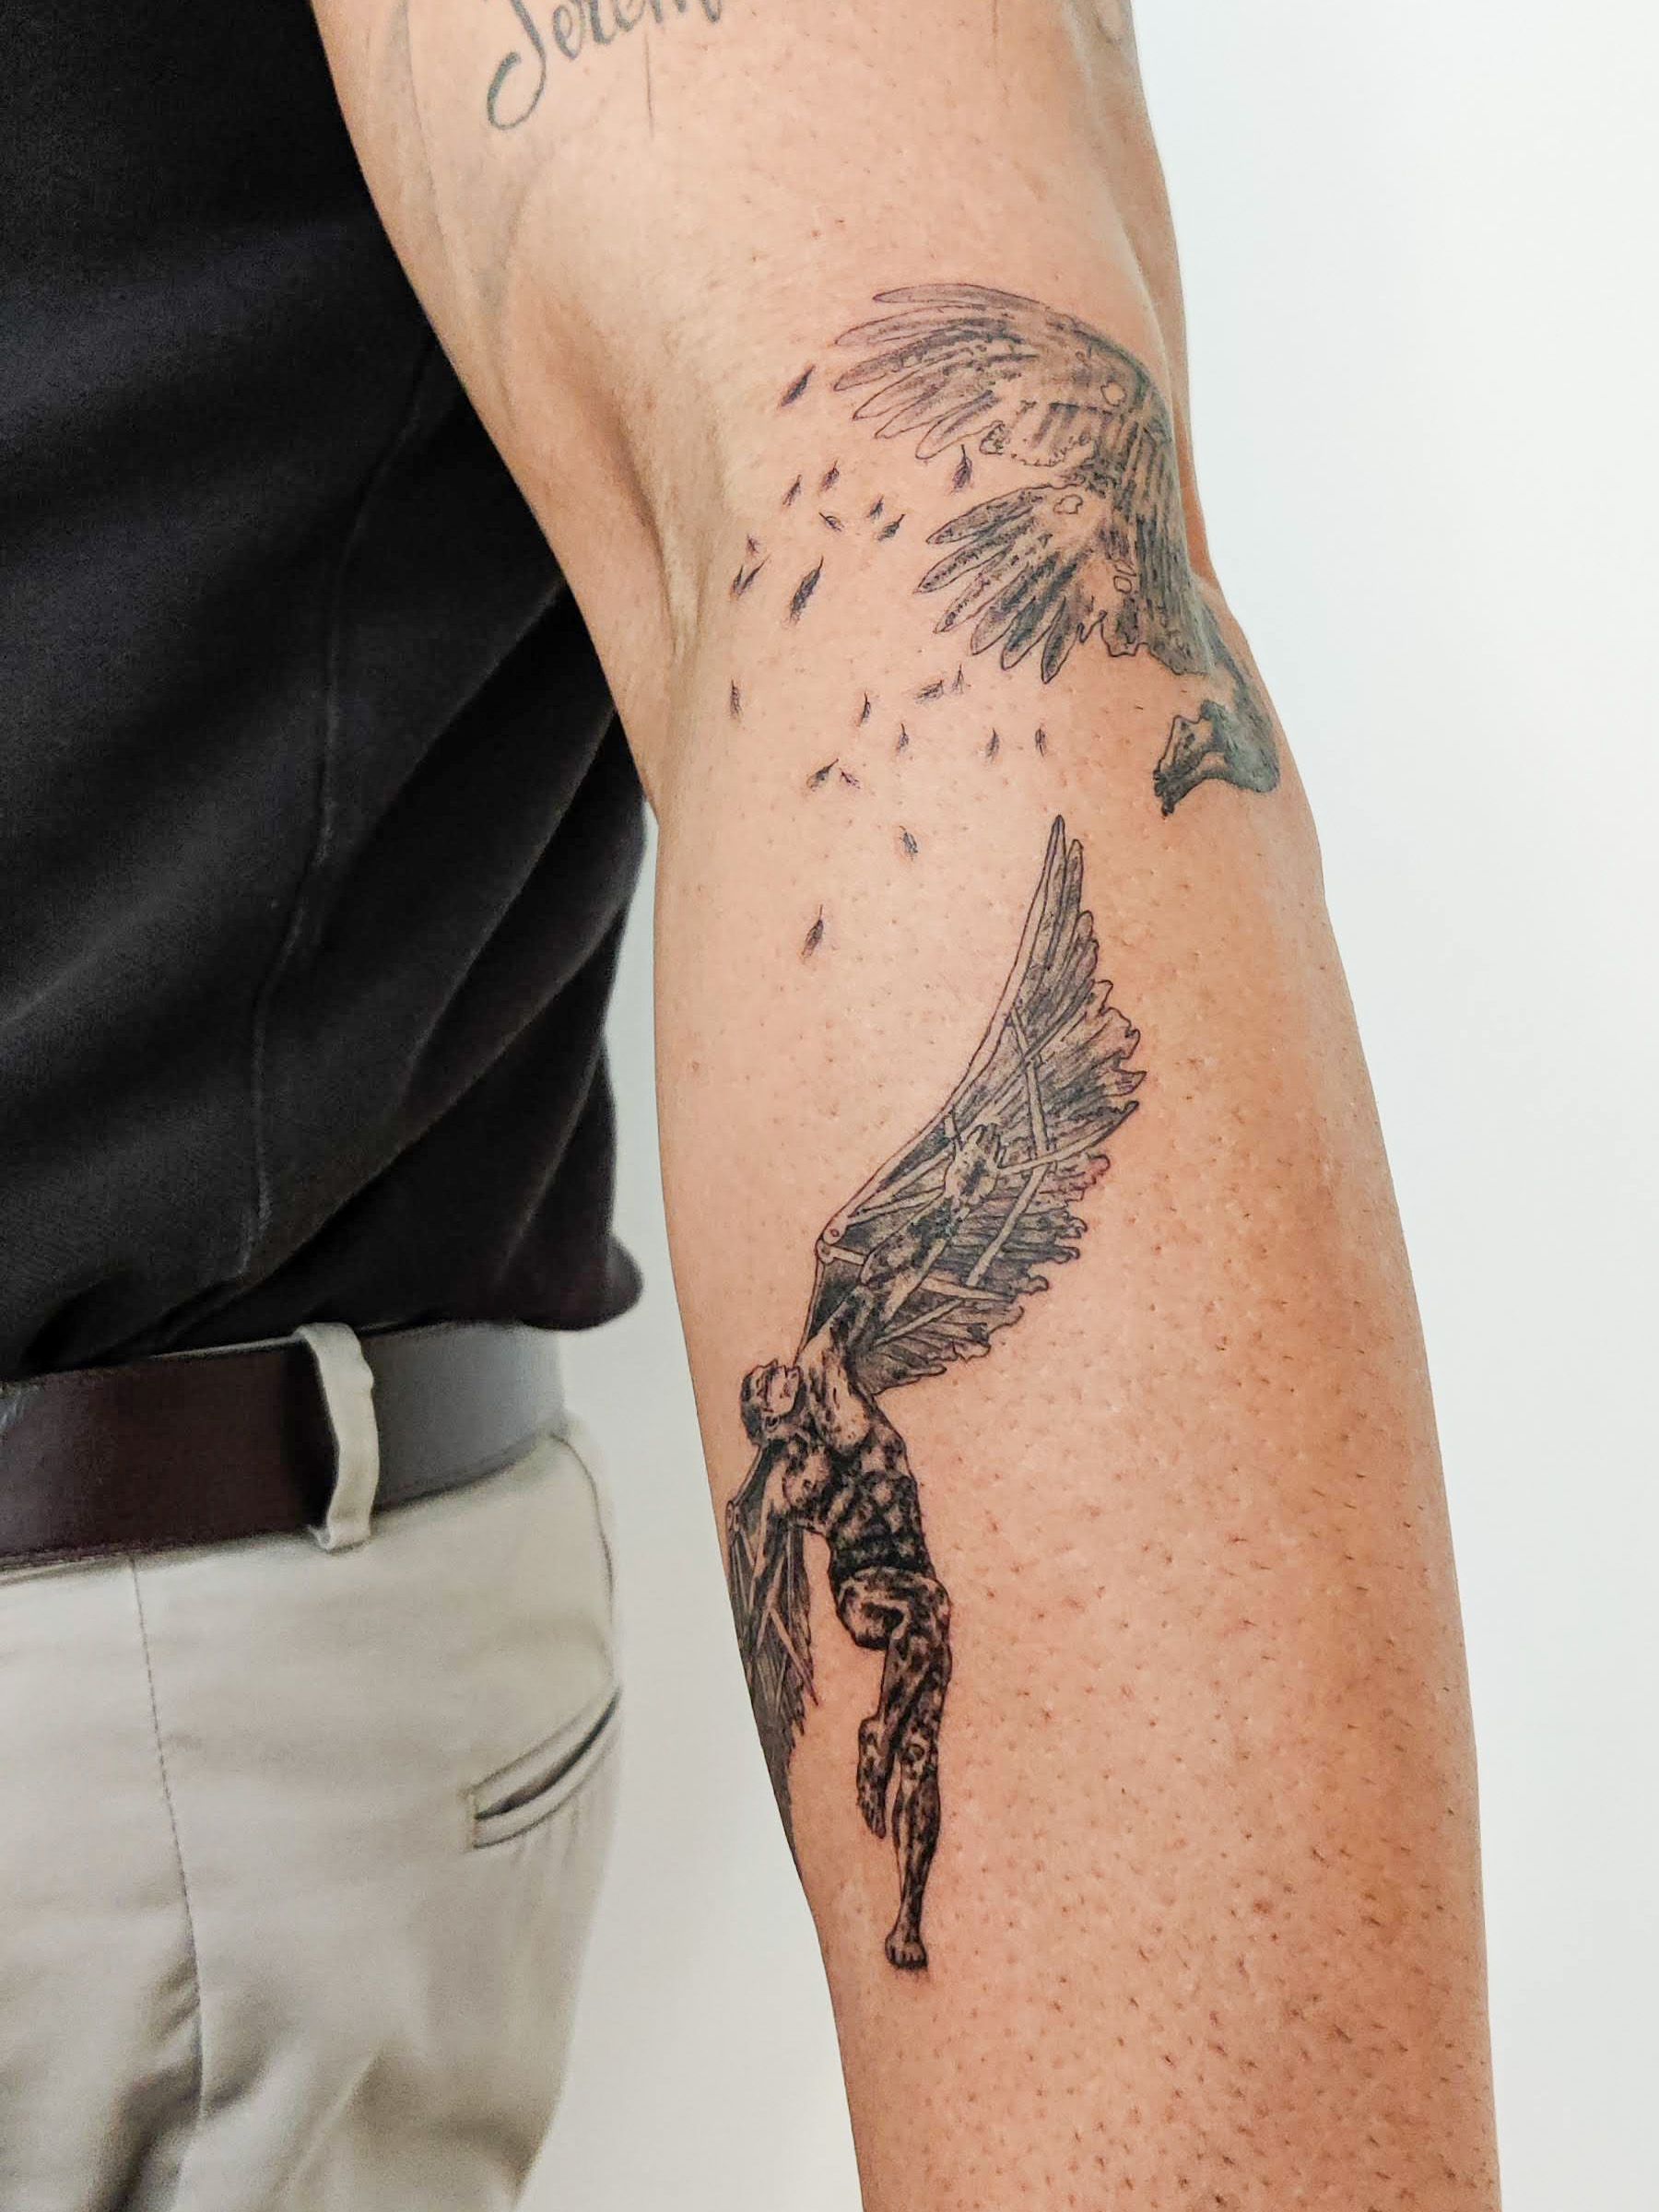 Amanda Piejak na Instagramie  364 icarus thefalloficarus icarusfallen  icarustattoo angel noirtattoo ink ibl  Icarus tattoo Hand tattoos  Greek tattoos